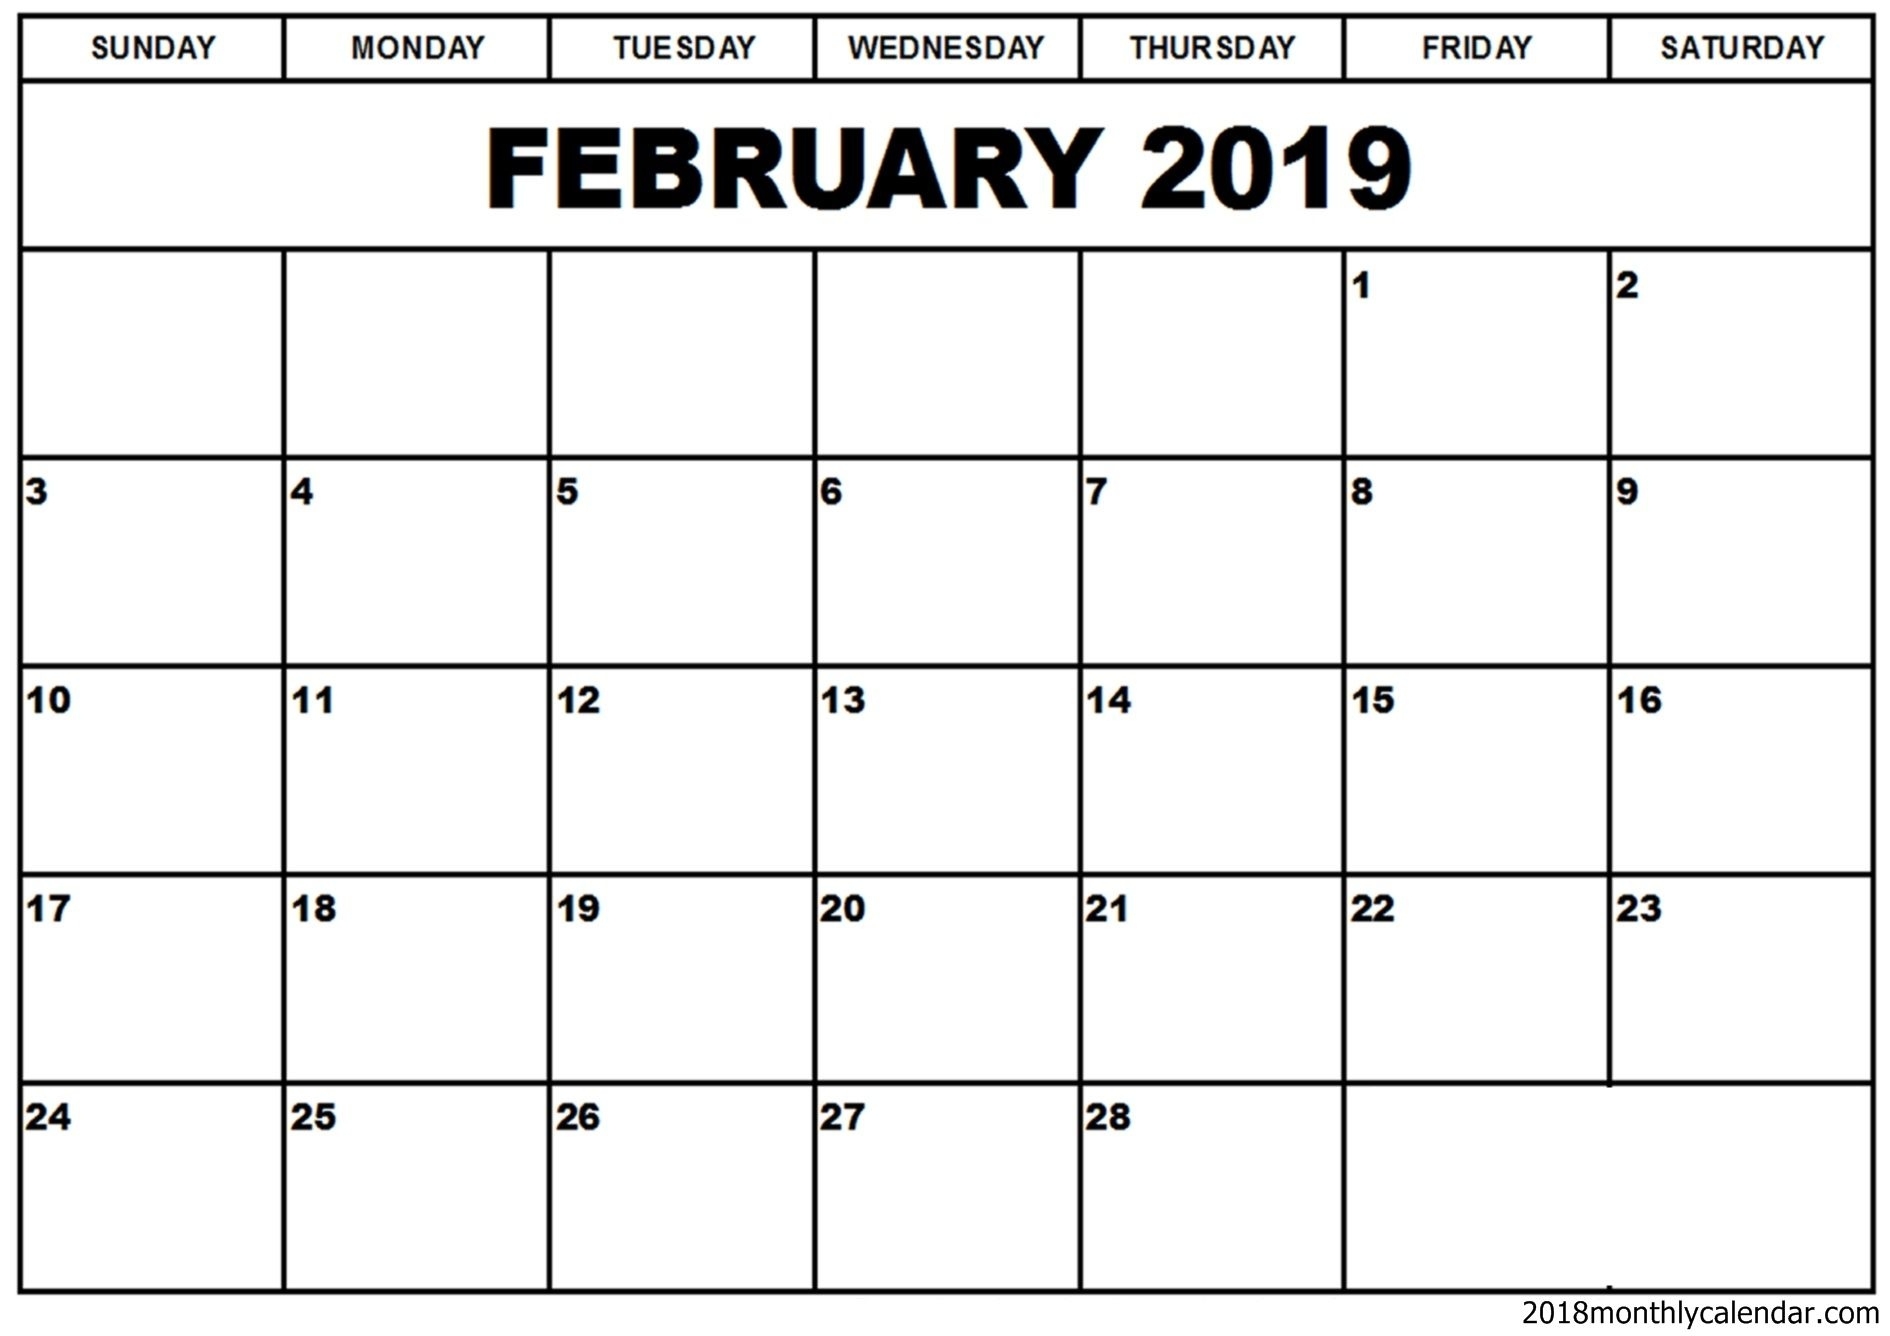 February 2019 Calendar Word Template | Editable Calendar Year Calendar Word Template